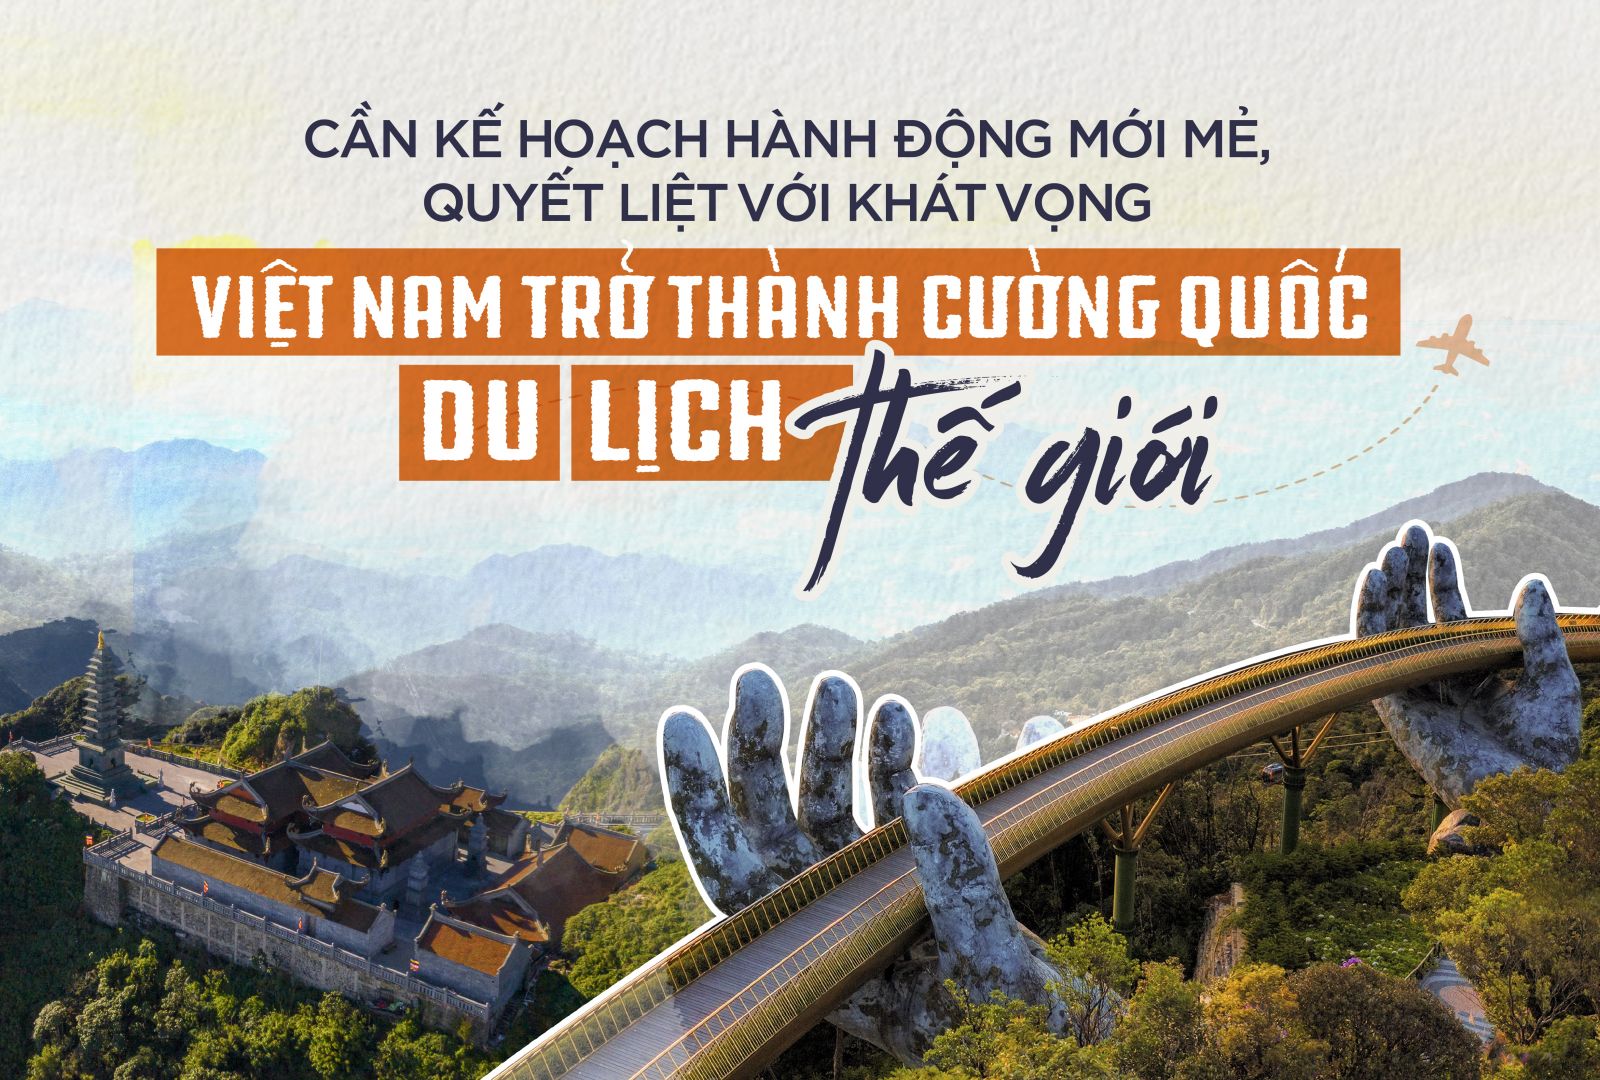 Cần kế hoạch hành động mới mẻ, quyết liệt với khát vọng Việt Nam trở thành cường quốc du lịch thế giới